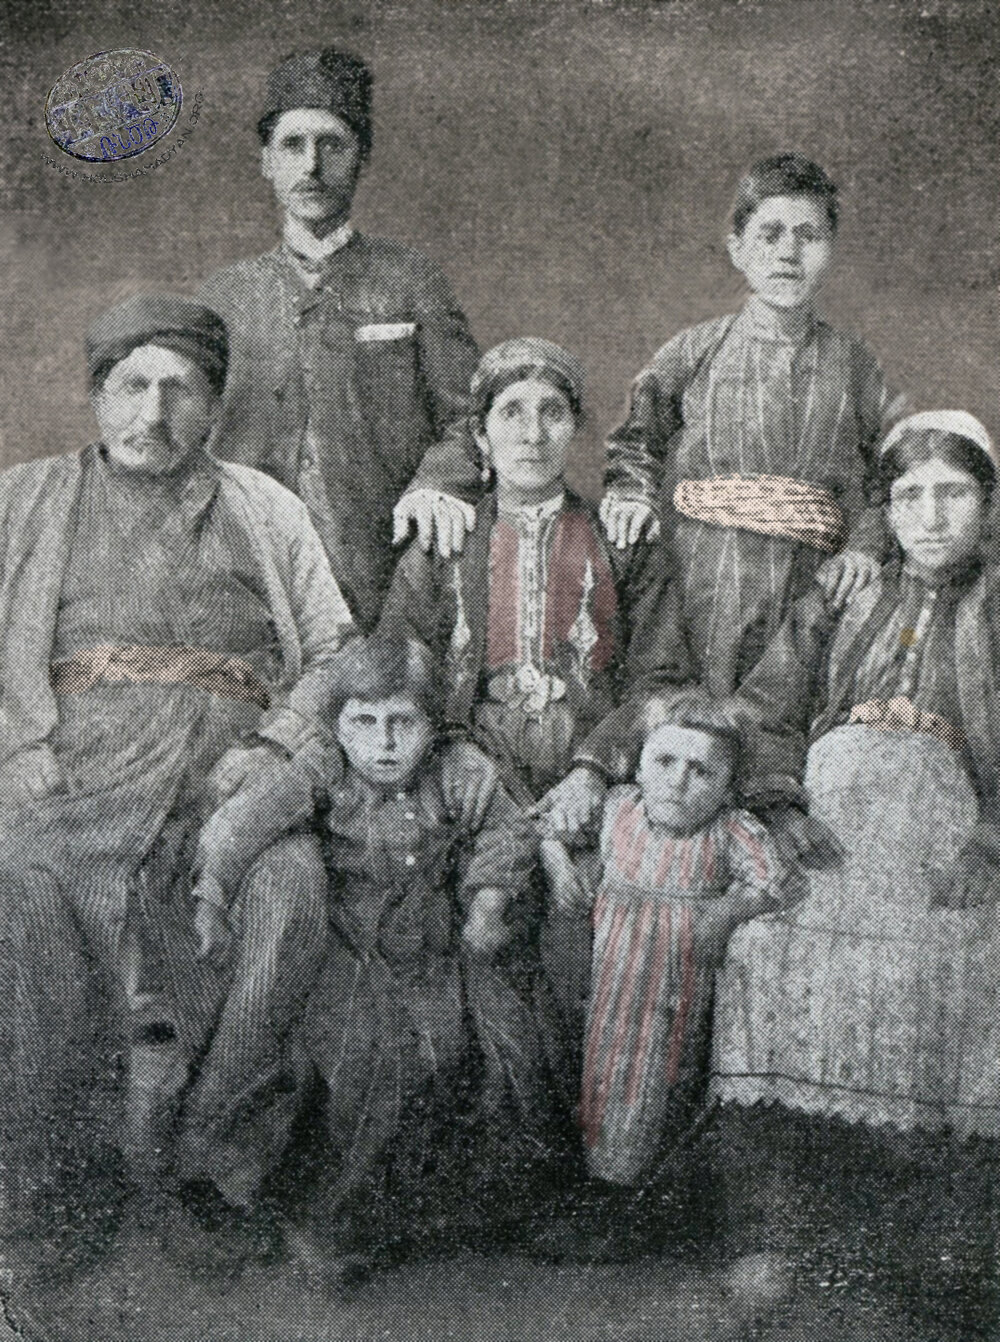 Յովակիմ Պաղտասարեանի ընտանիքը՝ Վերին Խոխ գիւղէն